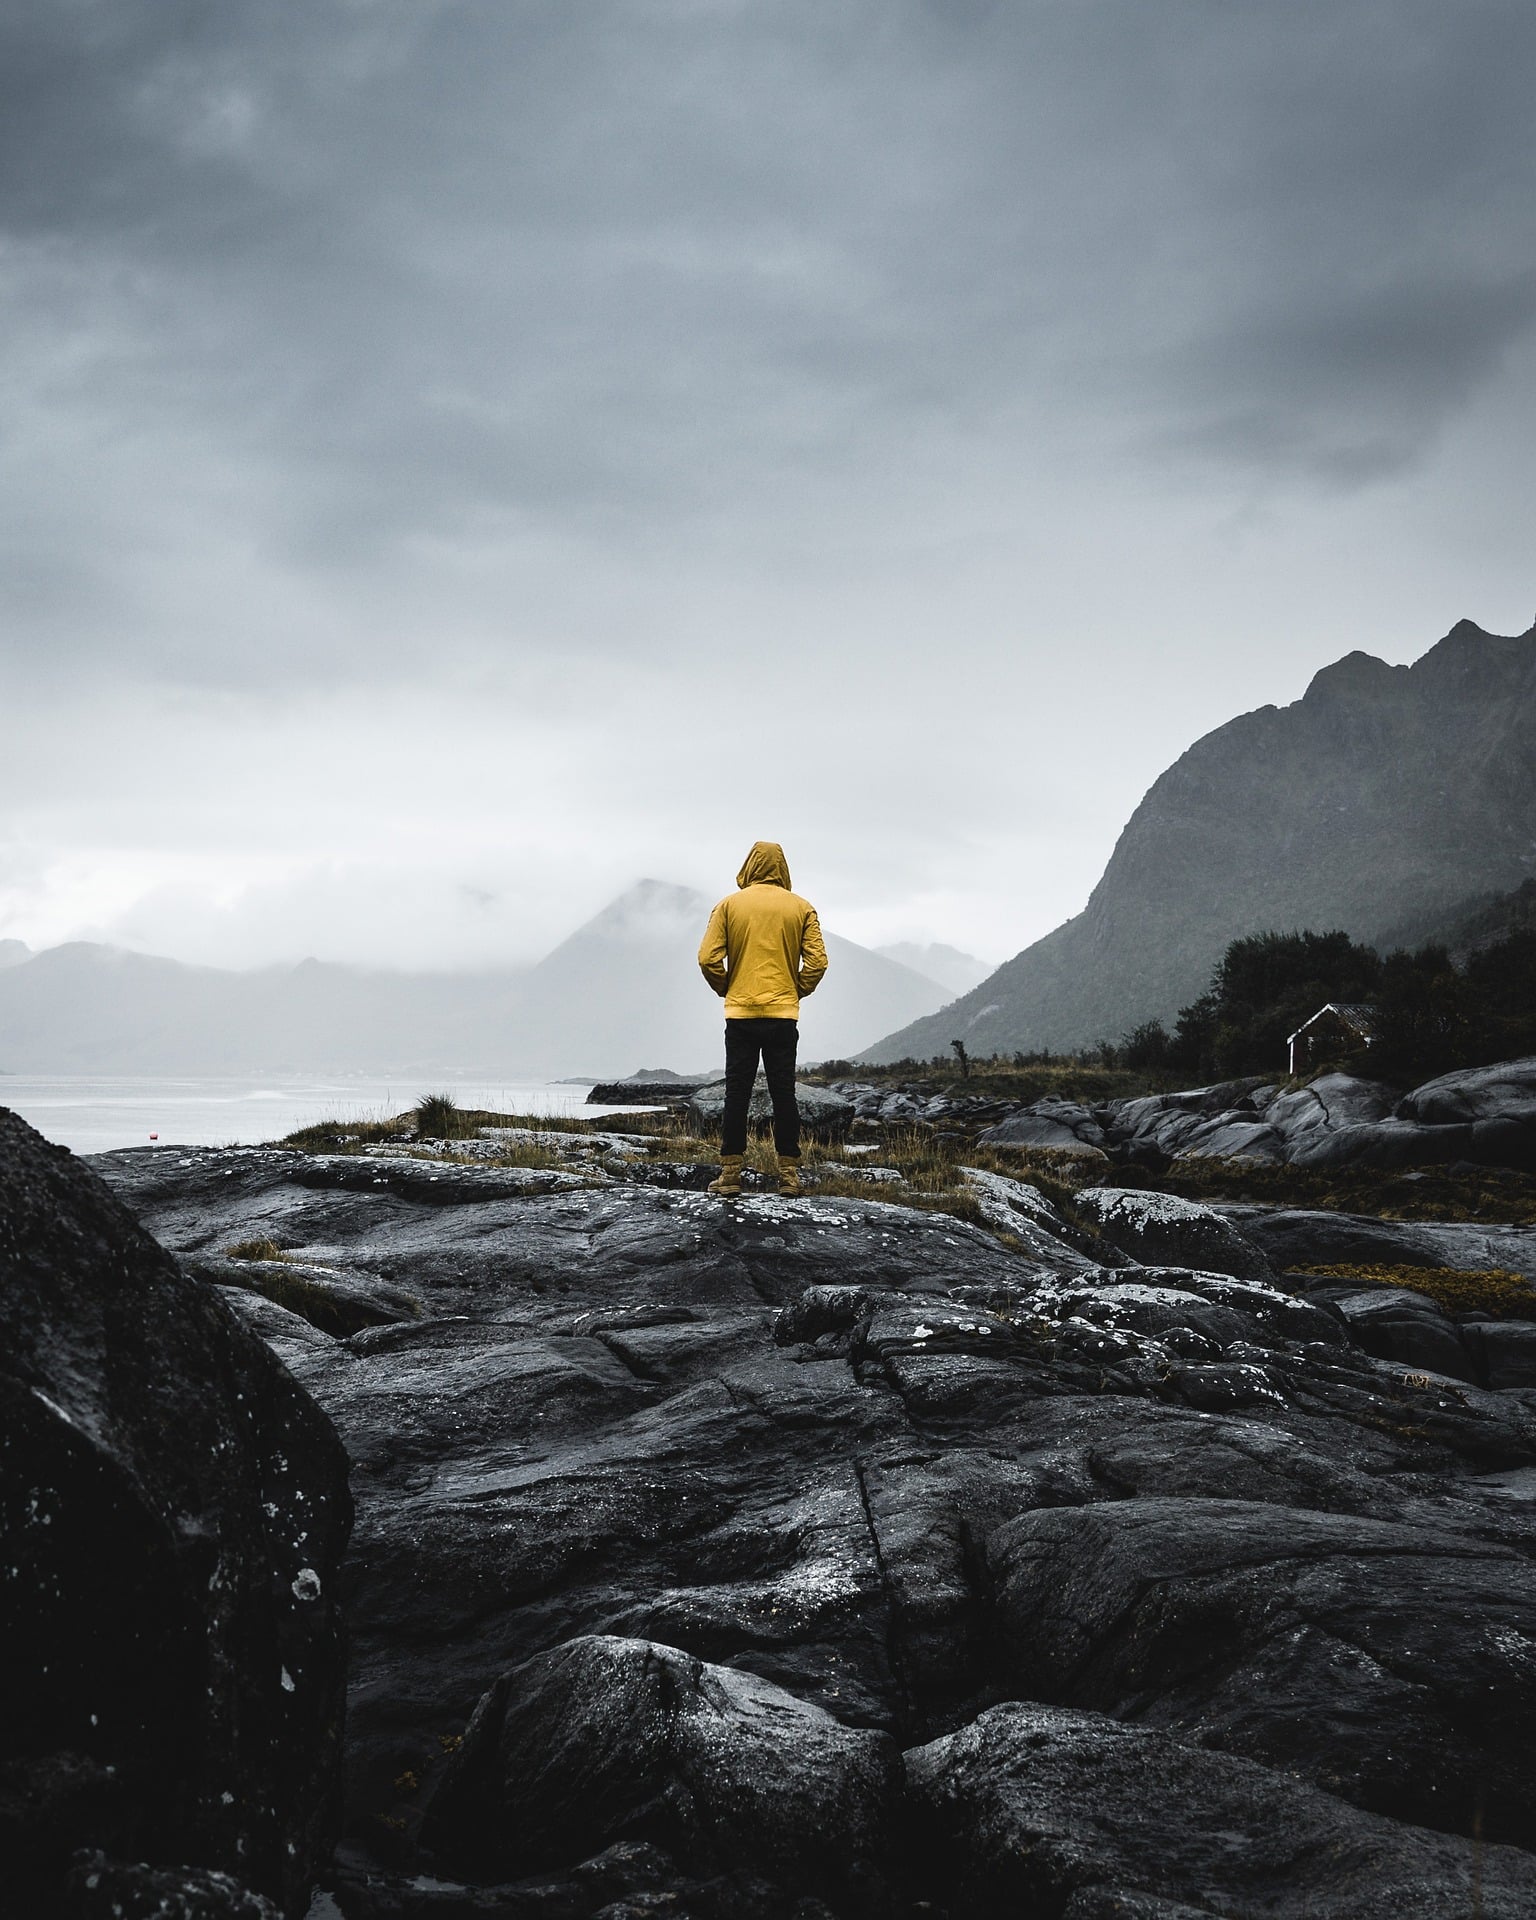 Ein menschen steht auf einen Steinfeld und blickt in die Ferne. Die Person hat eine gelbe Jacke an und ist mit dem Rücken zum Fotografen